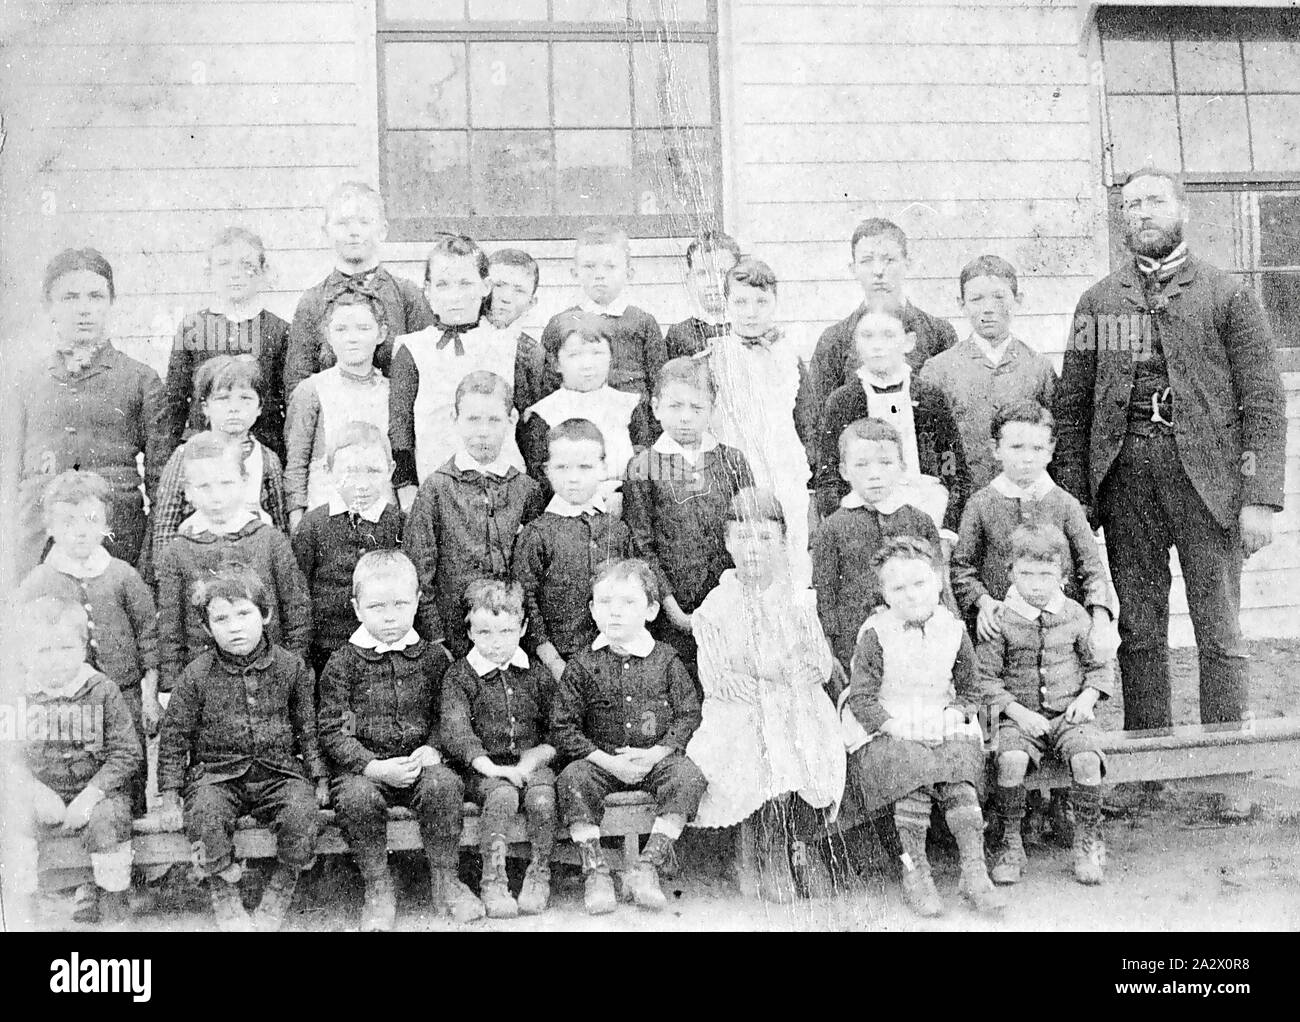 Negative - Schüler & Lehrer, Kyneton Bezirk, Victoria, um 1870, eine Gruppe von Schülerinnen und Schüler und ihre Lehrer Stockfoto